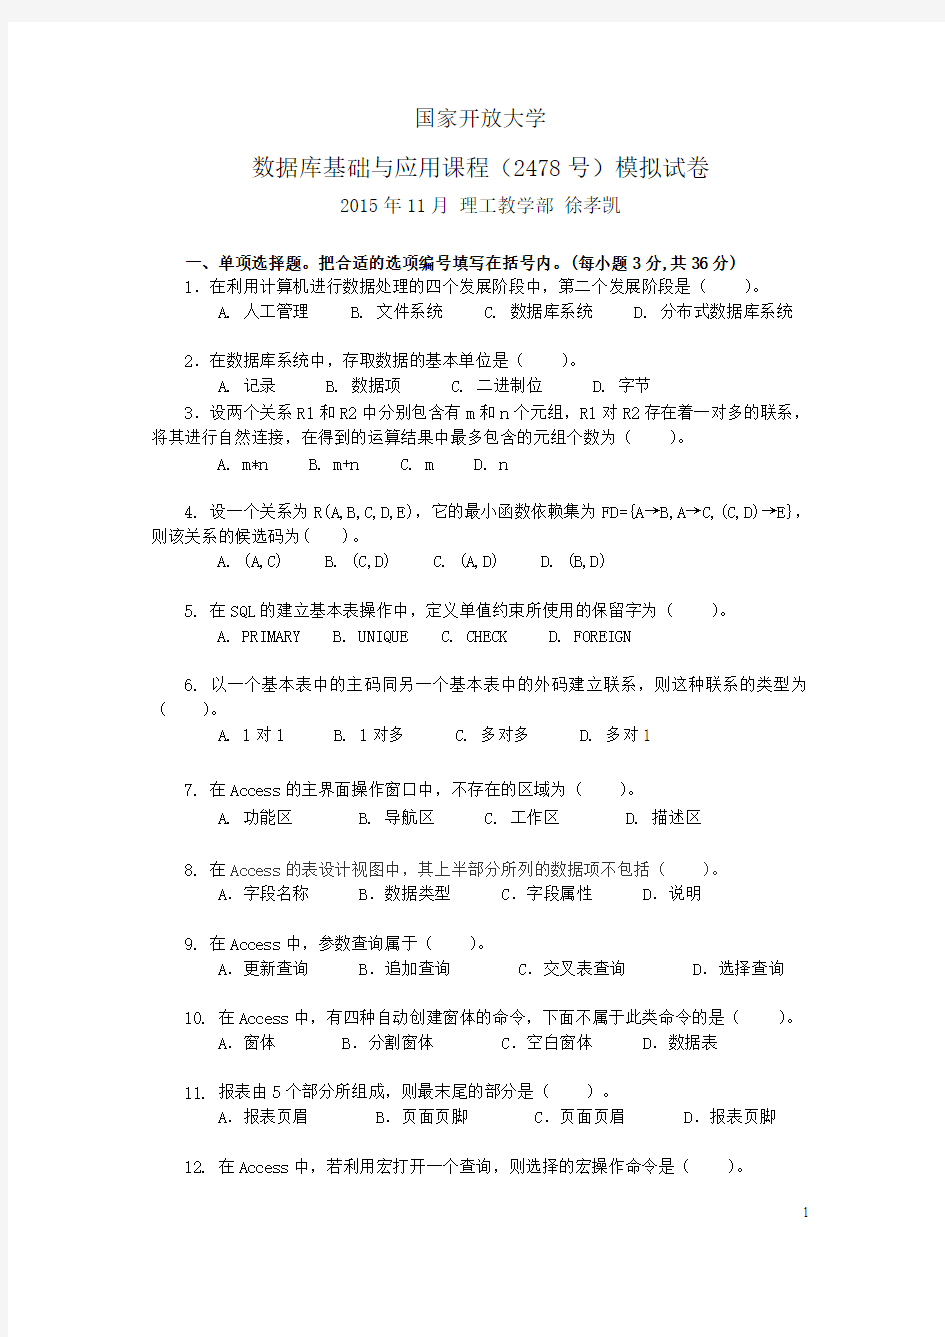 数据库基础与应用课程期末模拟试卷(2015秋季-徐孝凯)-1